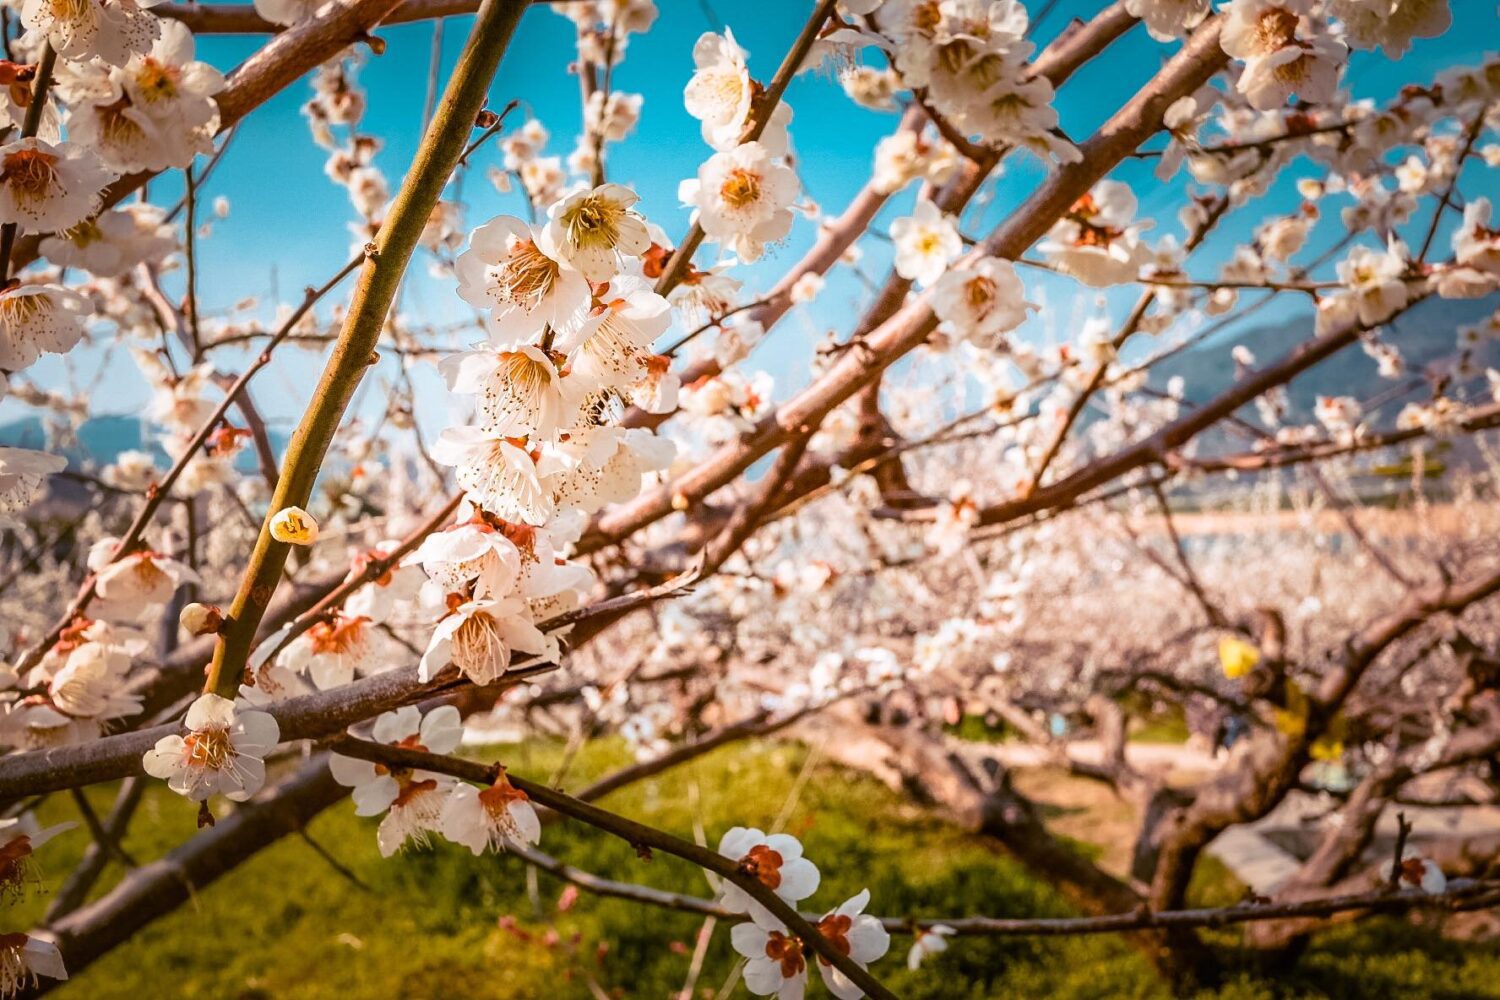 gwangyang maehwa village plum blossoms